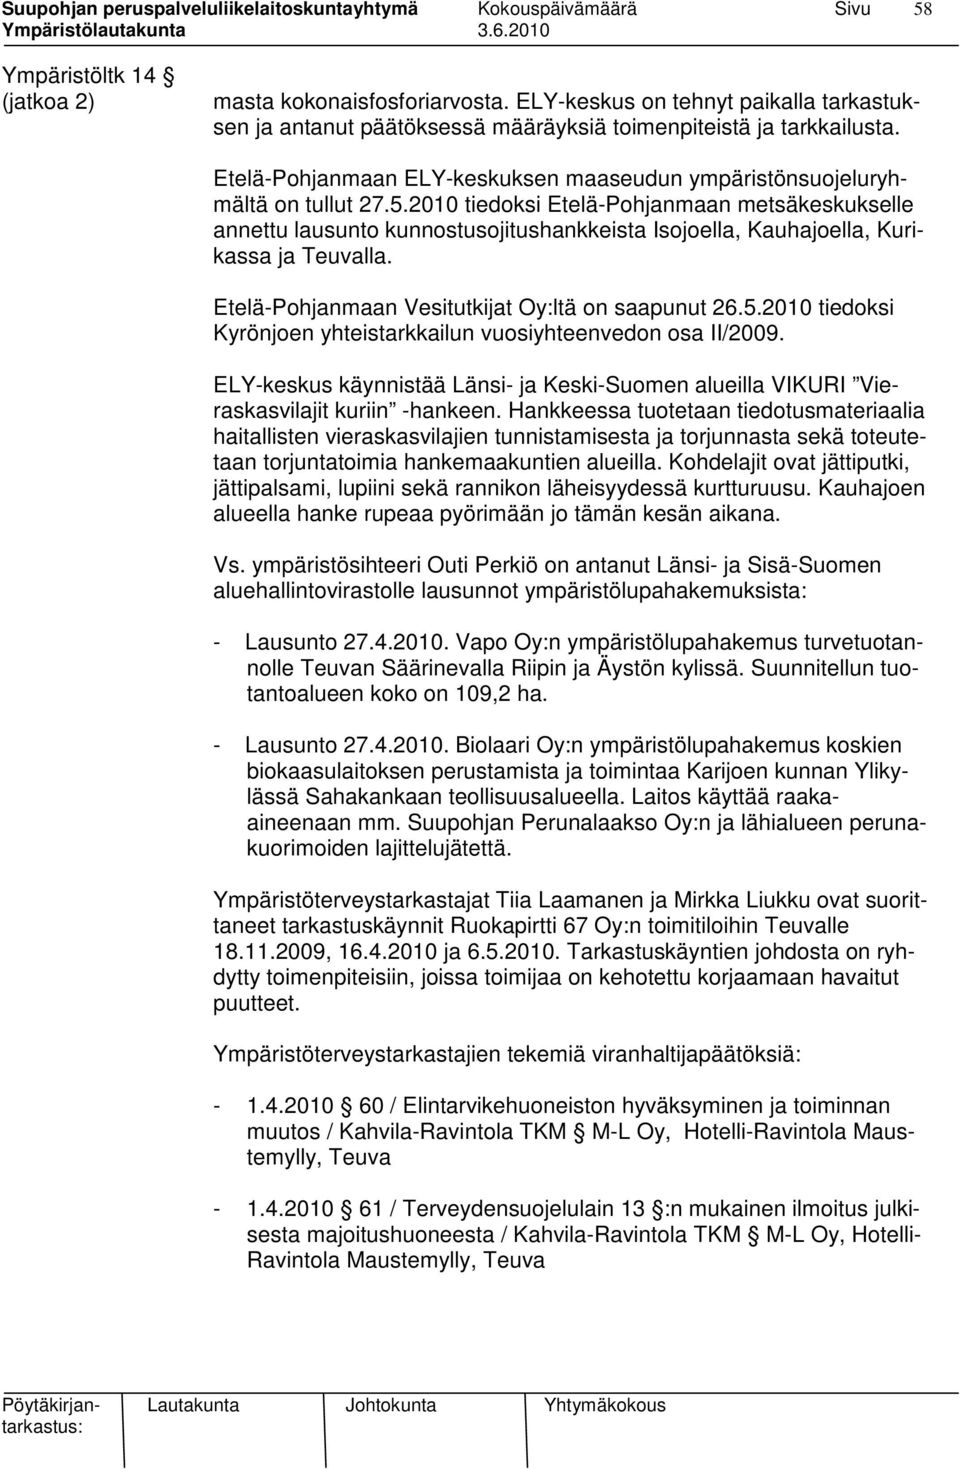 2010 tiedoksi Etelä-Pohjanmaan metsäkeskukselle annettu lausunto kunnostusojitushankkeista Isojoella, Kauhajoella, Kurikassa ja Teuvalla. Etelä-Pohjanmaan Vesitutkijat Oy:ltä on saapunut 26.5.